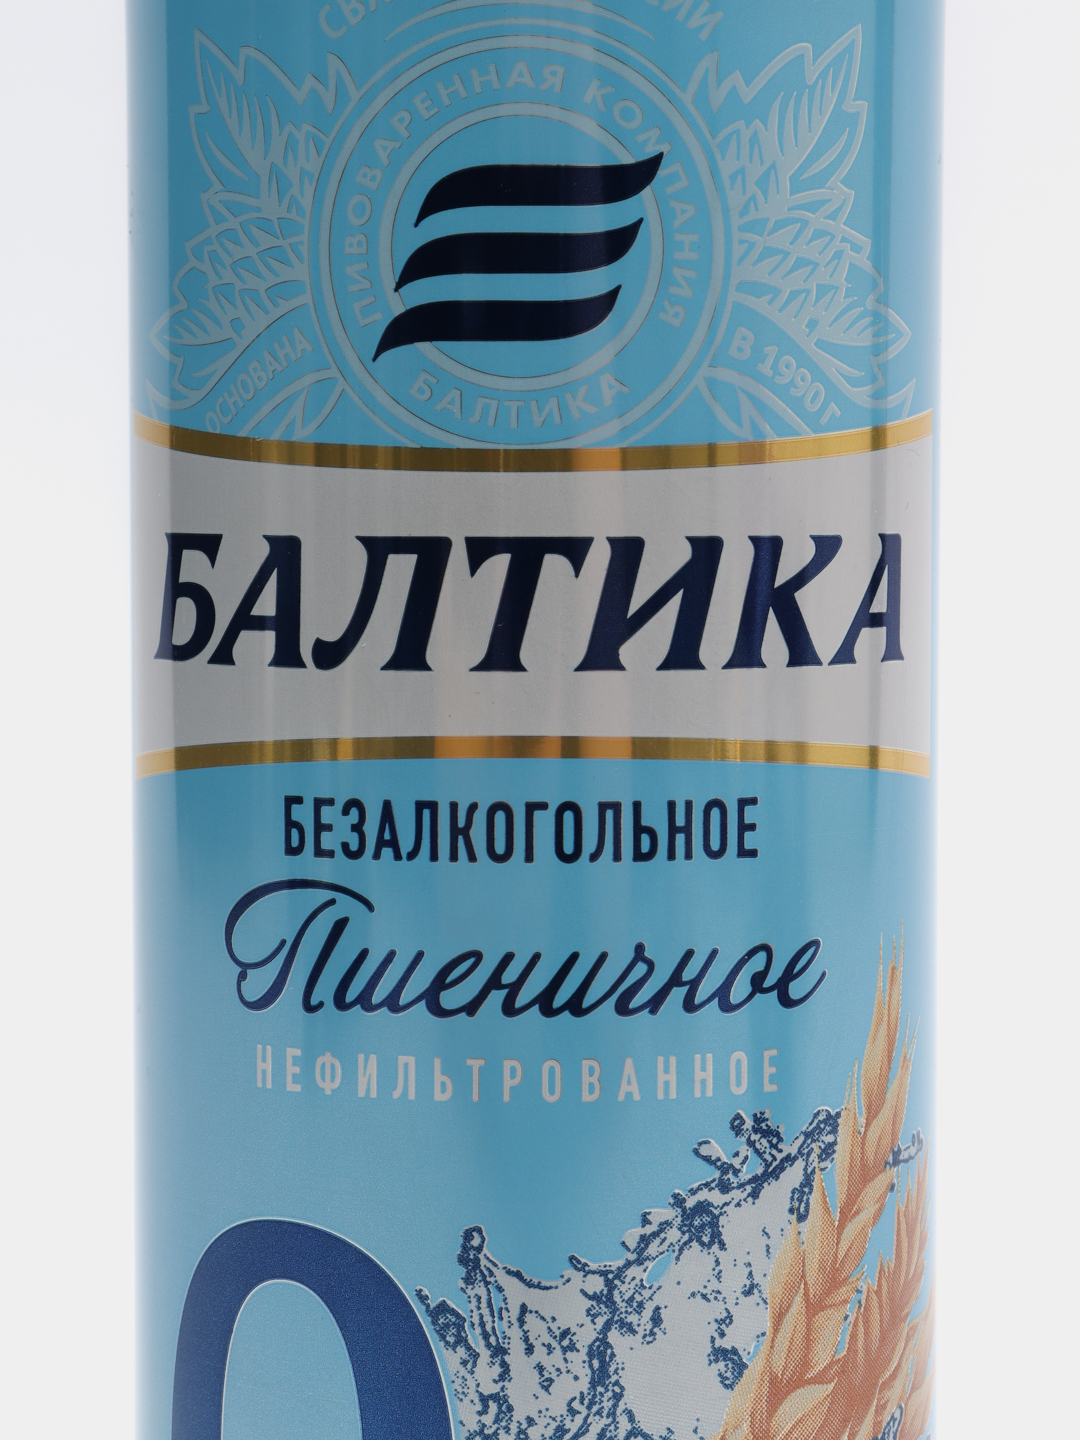 Балтика пшеничное нефильтрованное безалкогольное. Балтика авторское пиво.